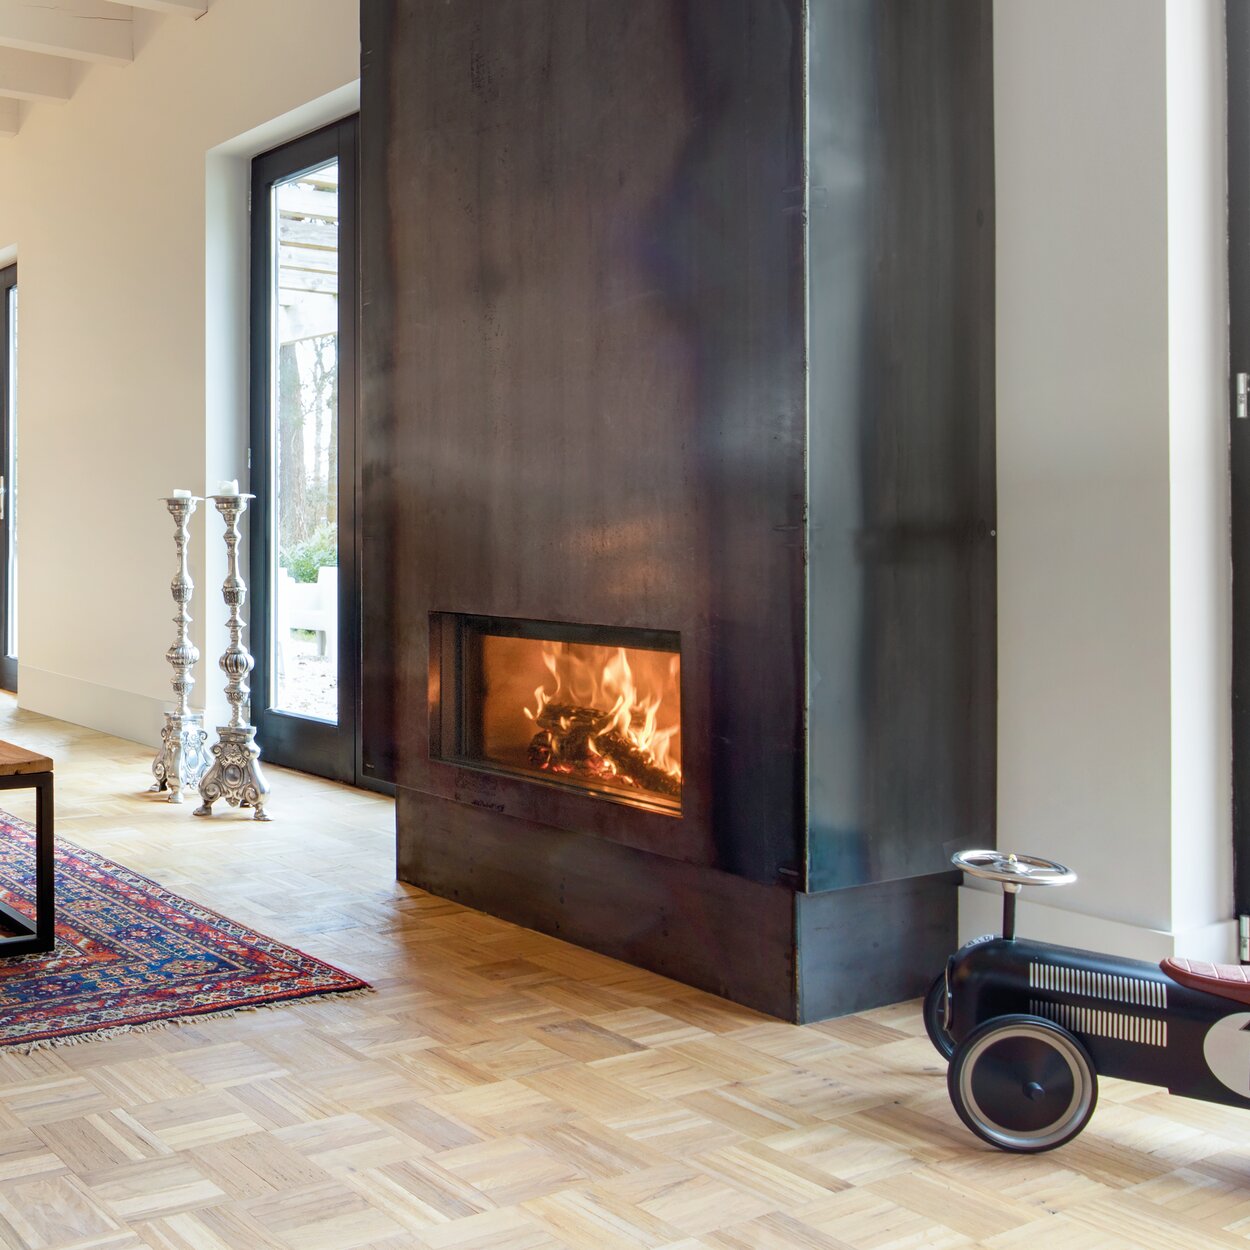  Holz-Kamin W70/33F von Kalfire in grossem, hellen Wohnraum mit schwarzer Stahlverkleidung neben einem Spielzeugauto